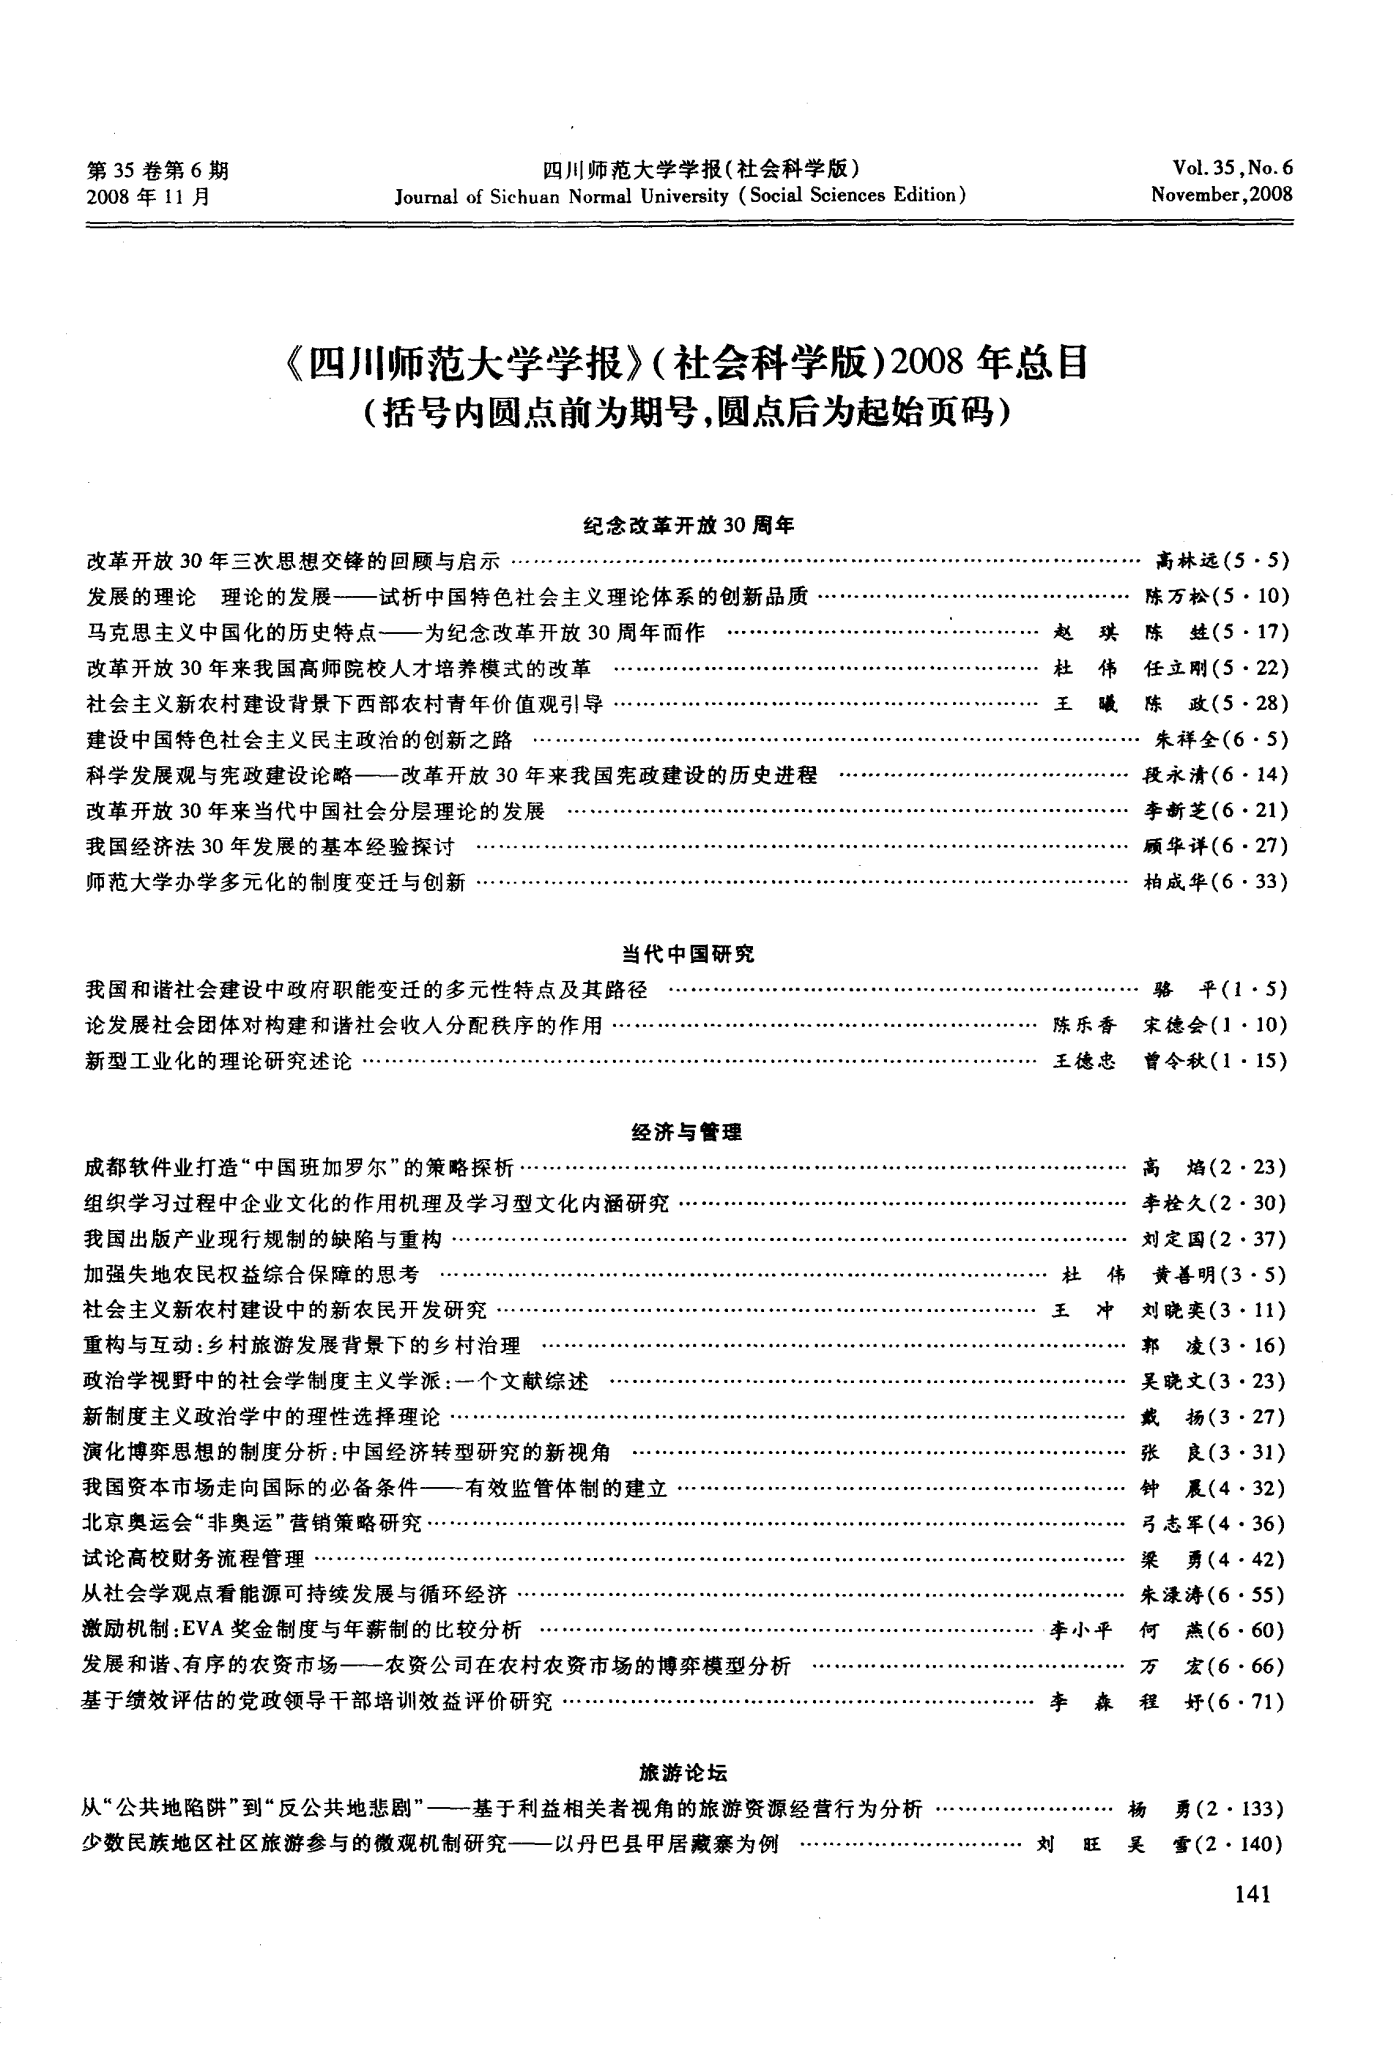 《四川师范大学学报》(社会科学版)2008年总目(括号内圆点前为期号,圆点后为起始页码)